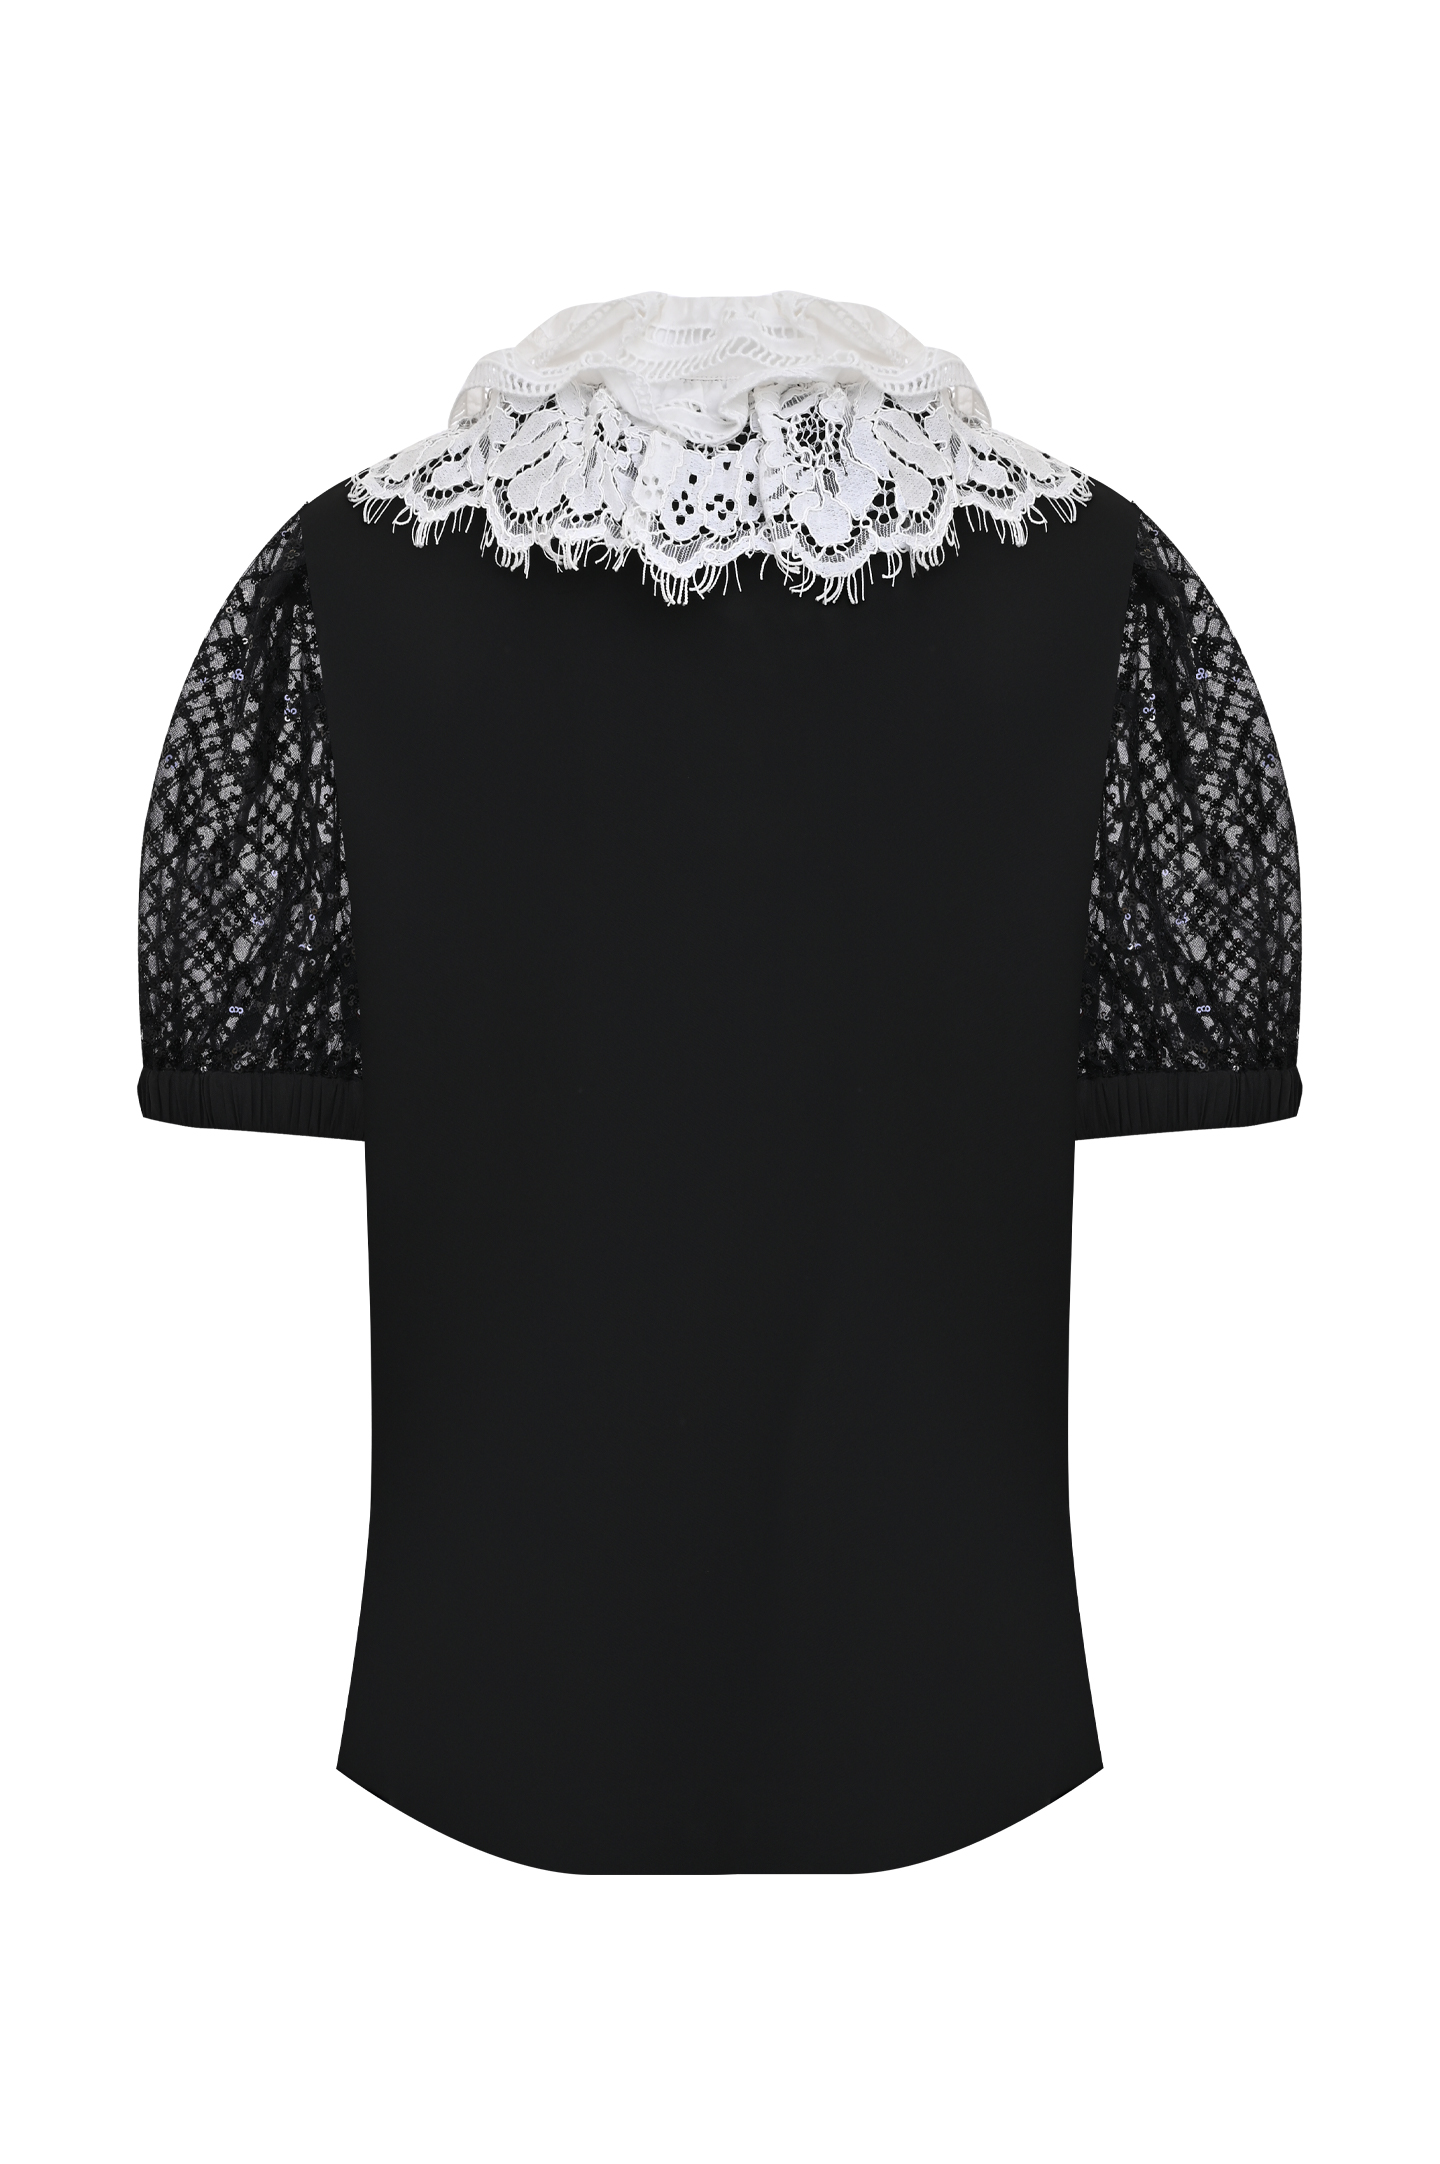 Блуза SELF PORTRAIT AW21-016TA, цвет: Черный, Женский